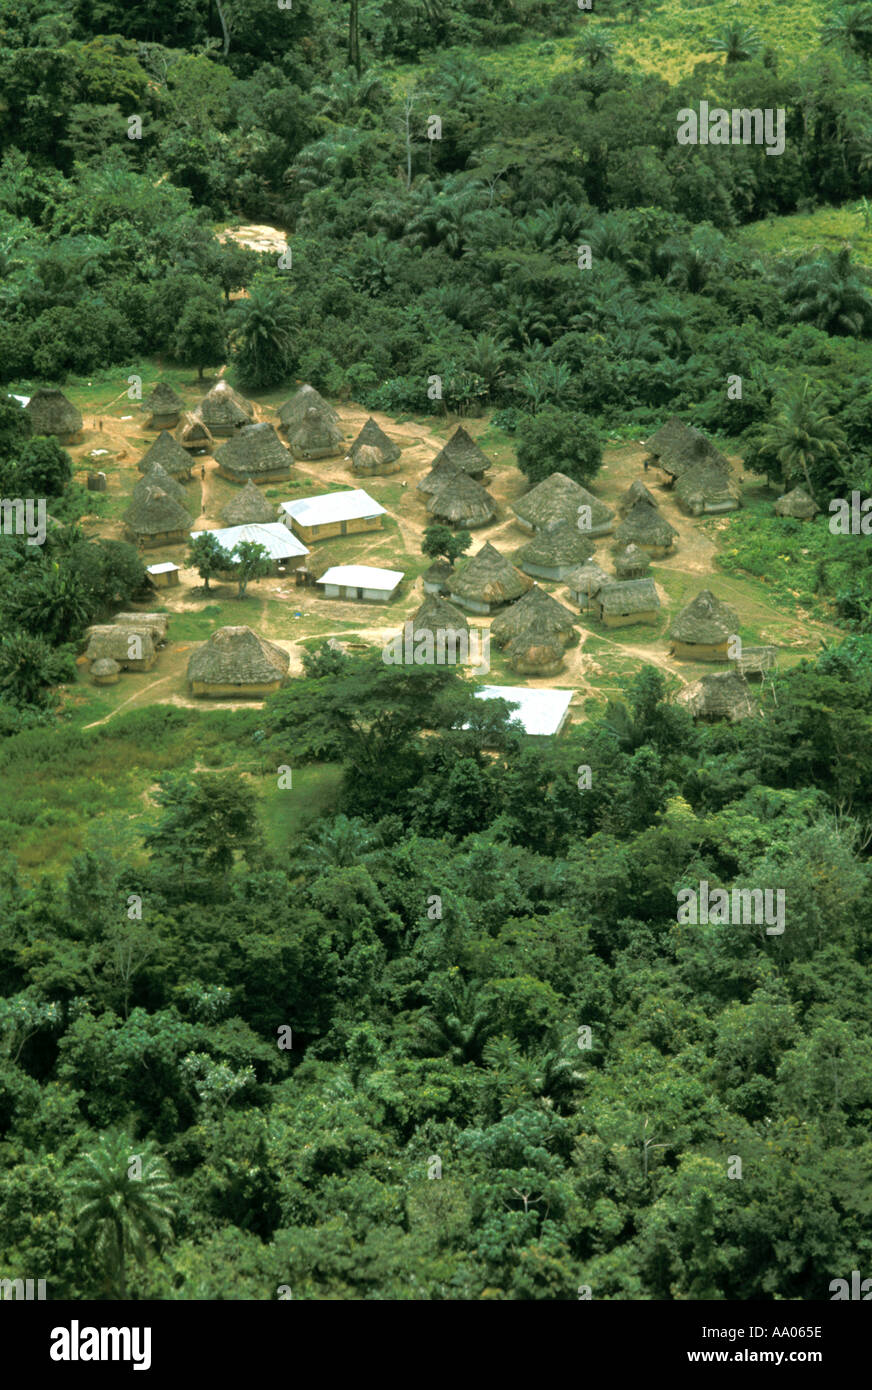 Afrika, Liberia. Die ethnische Gruppe des Dorfes Kpelle im Regenwald zeigt kontrastierende traditionelle Strohdachhütten und moderne Zinndachhäuser Stockfoto